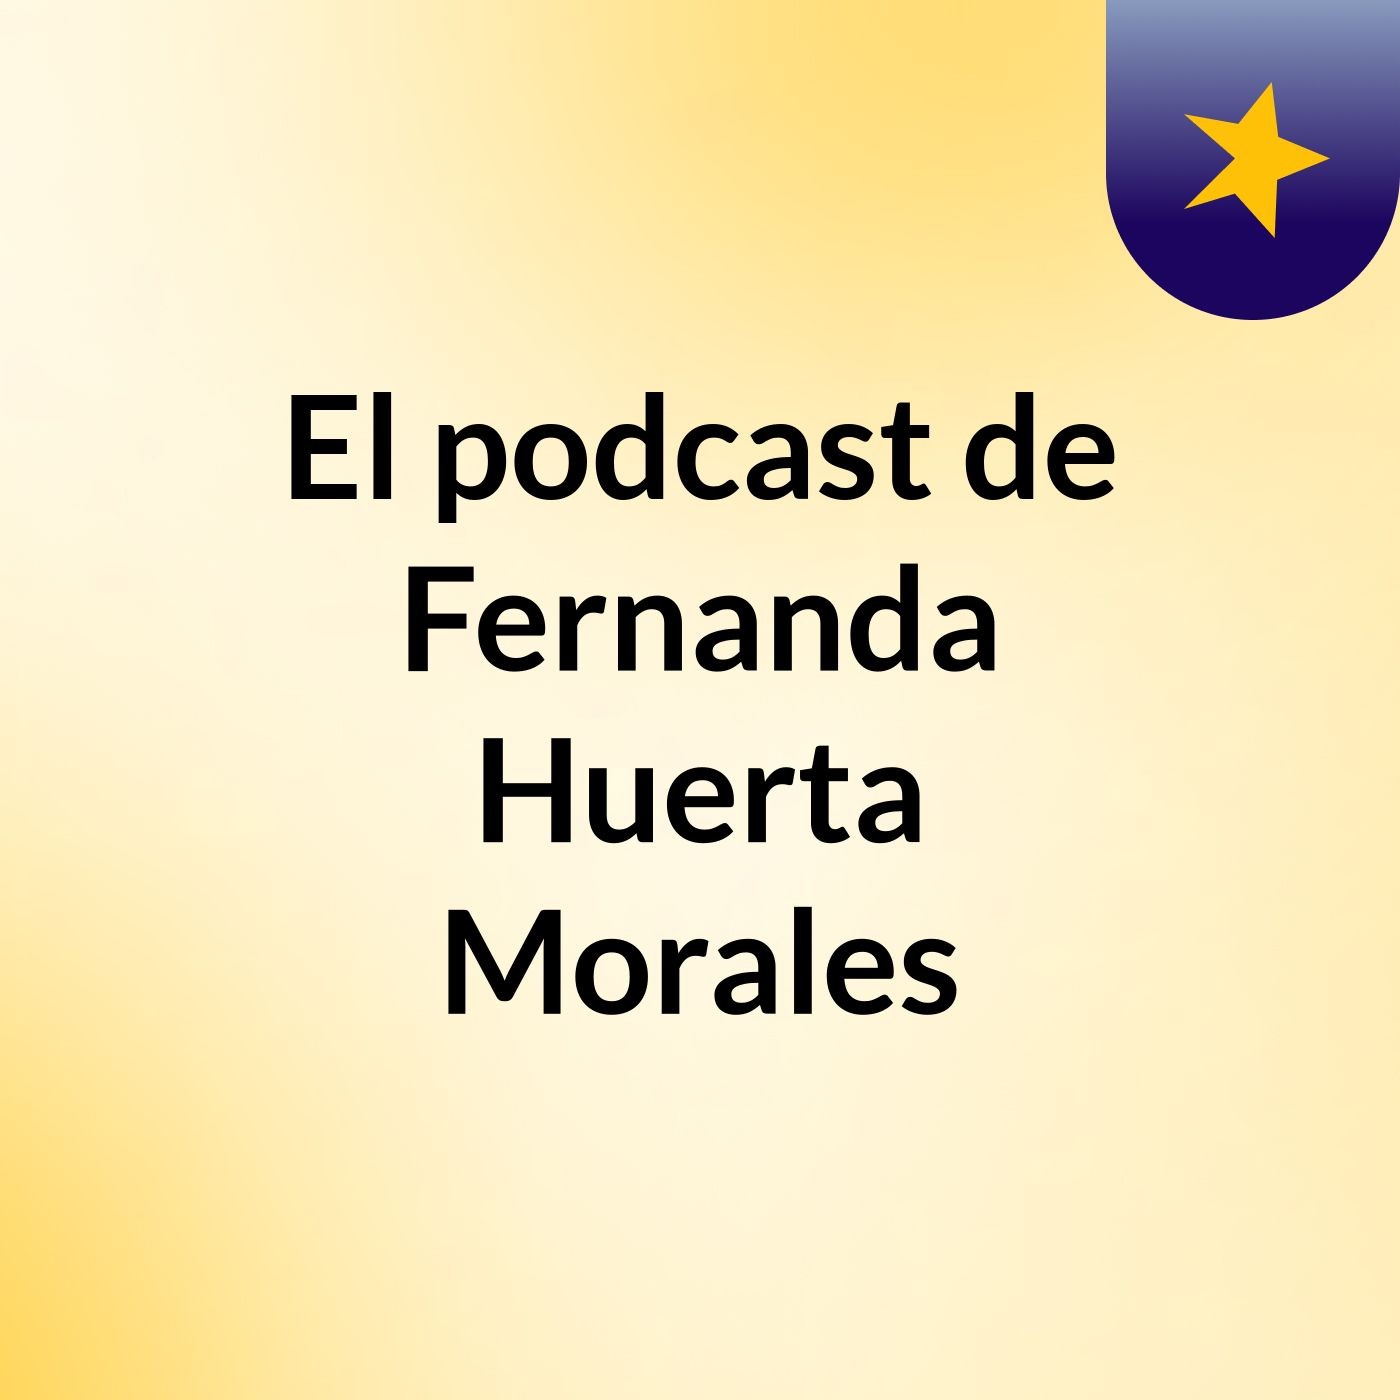 El podcast de Fernanda Huerta Morales